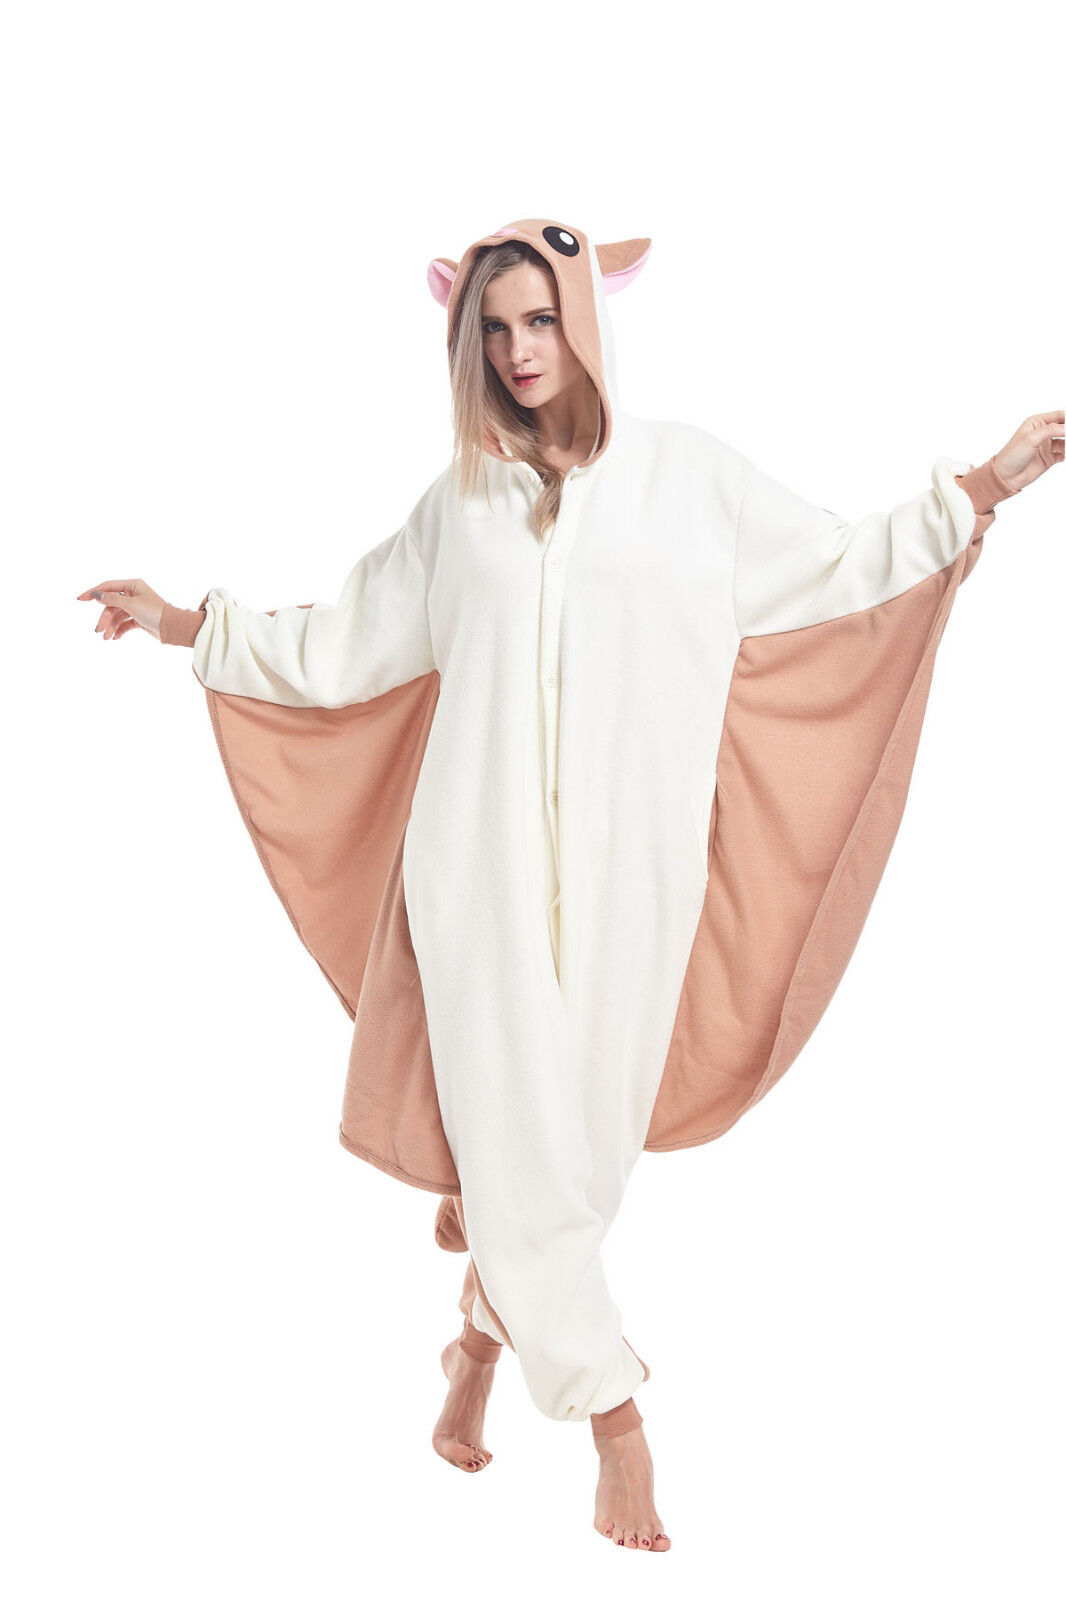 Flying Squirrel Pajamas Women Costumes Adult Animal Onesie0 Cosplay SleepingWear